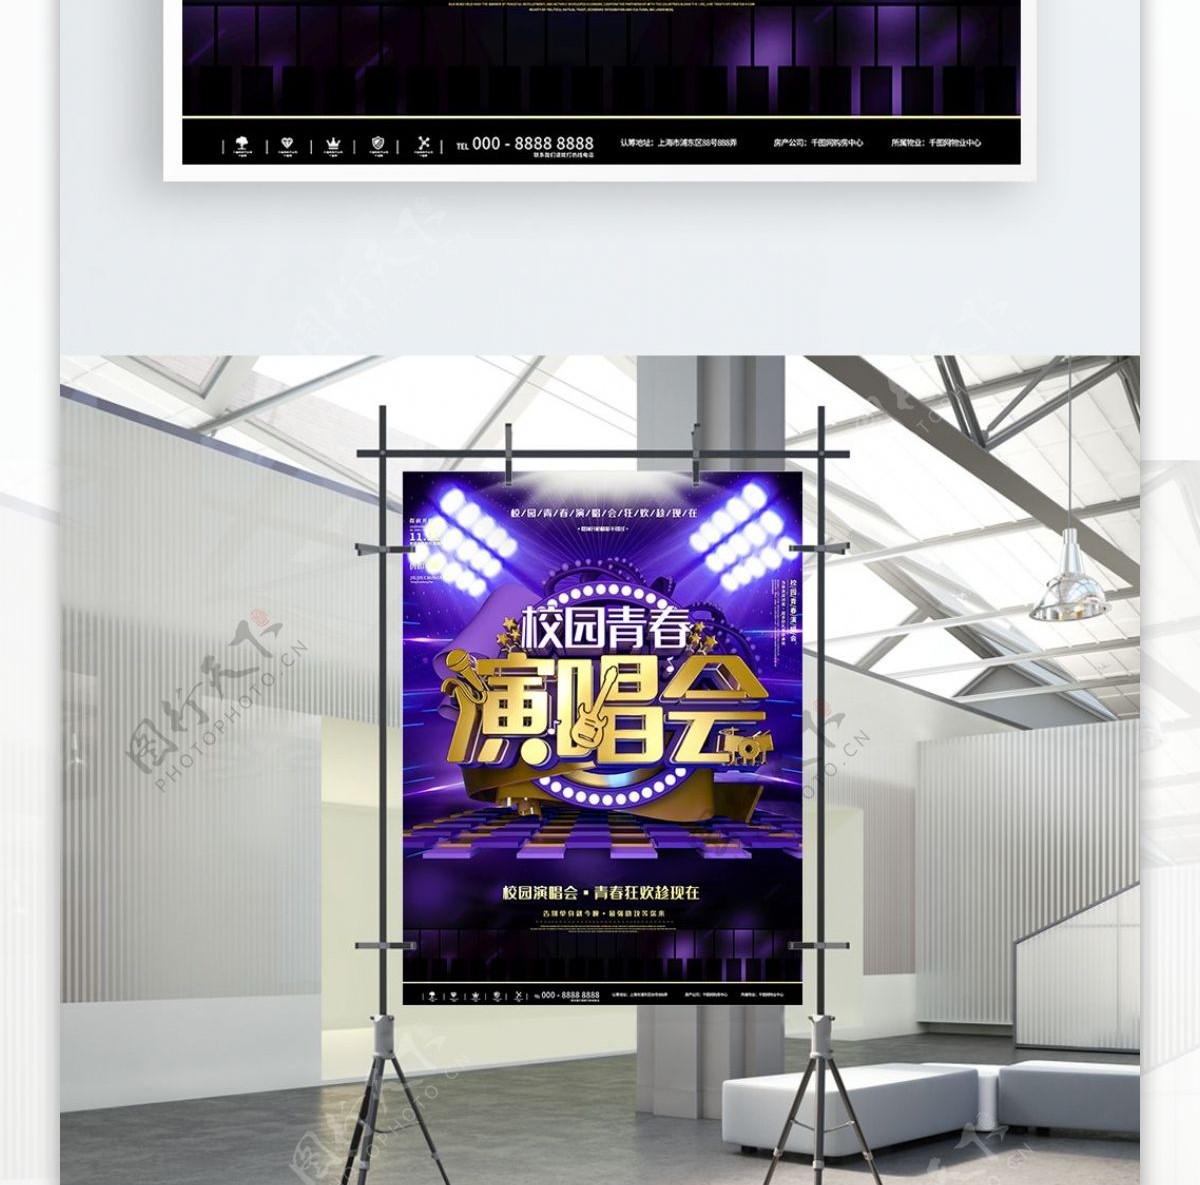 紫色校园演唱会歌手音乐会宣传海报